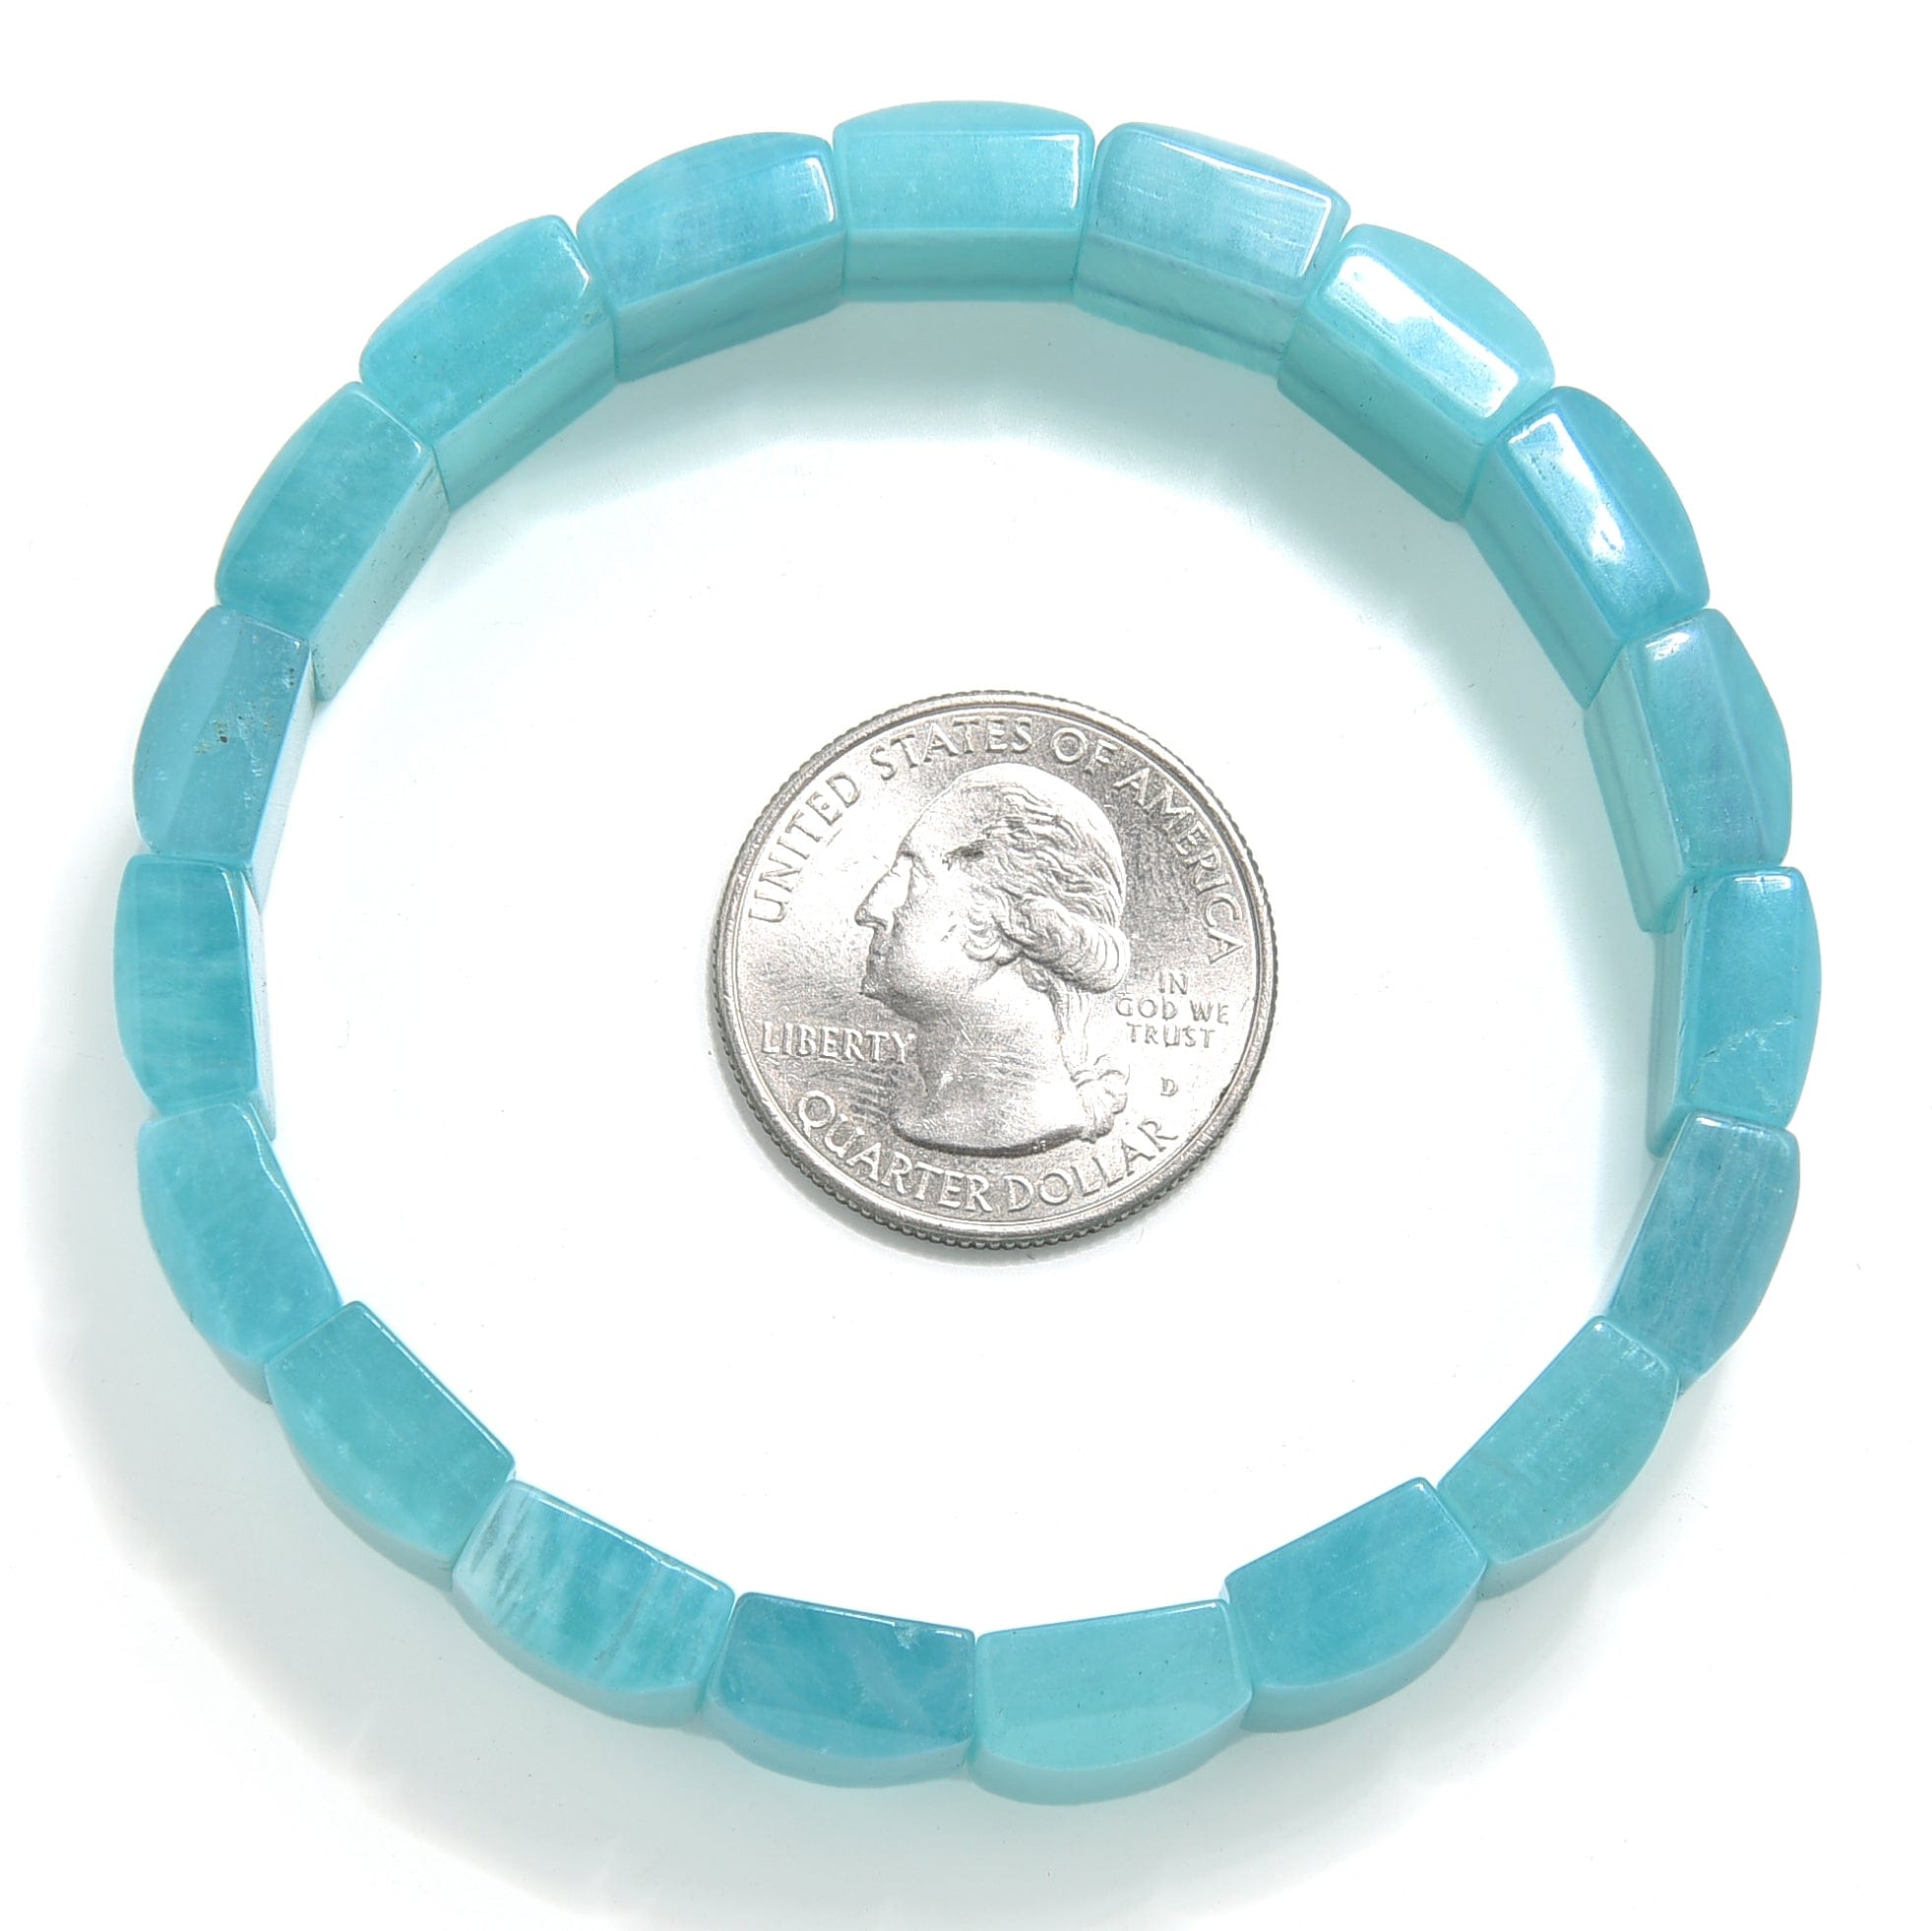 Kalifano Gemstone Bracelets Gem Grade Amazonite 13mm Gemstone Elastic Bracelet OLIVE-BGP-015-S